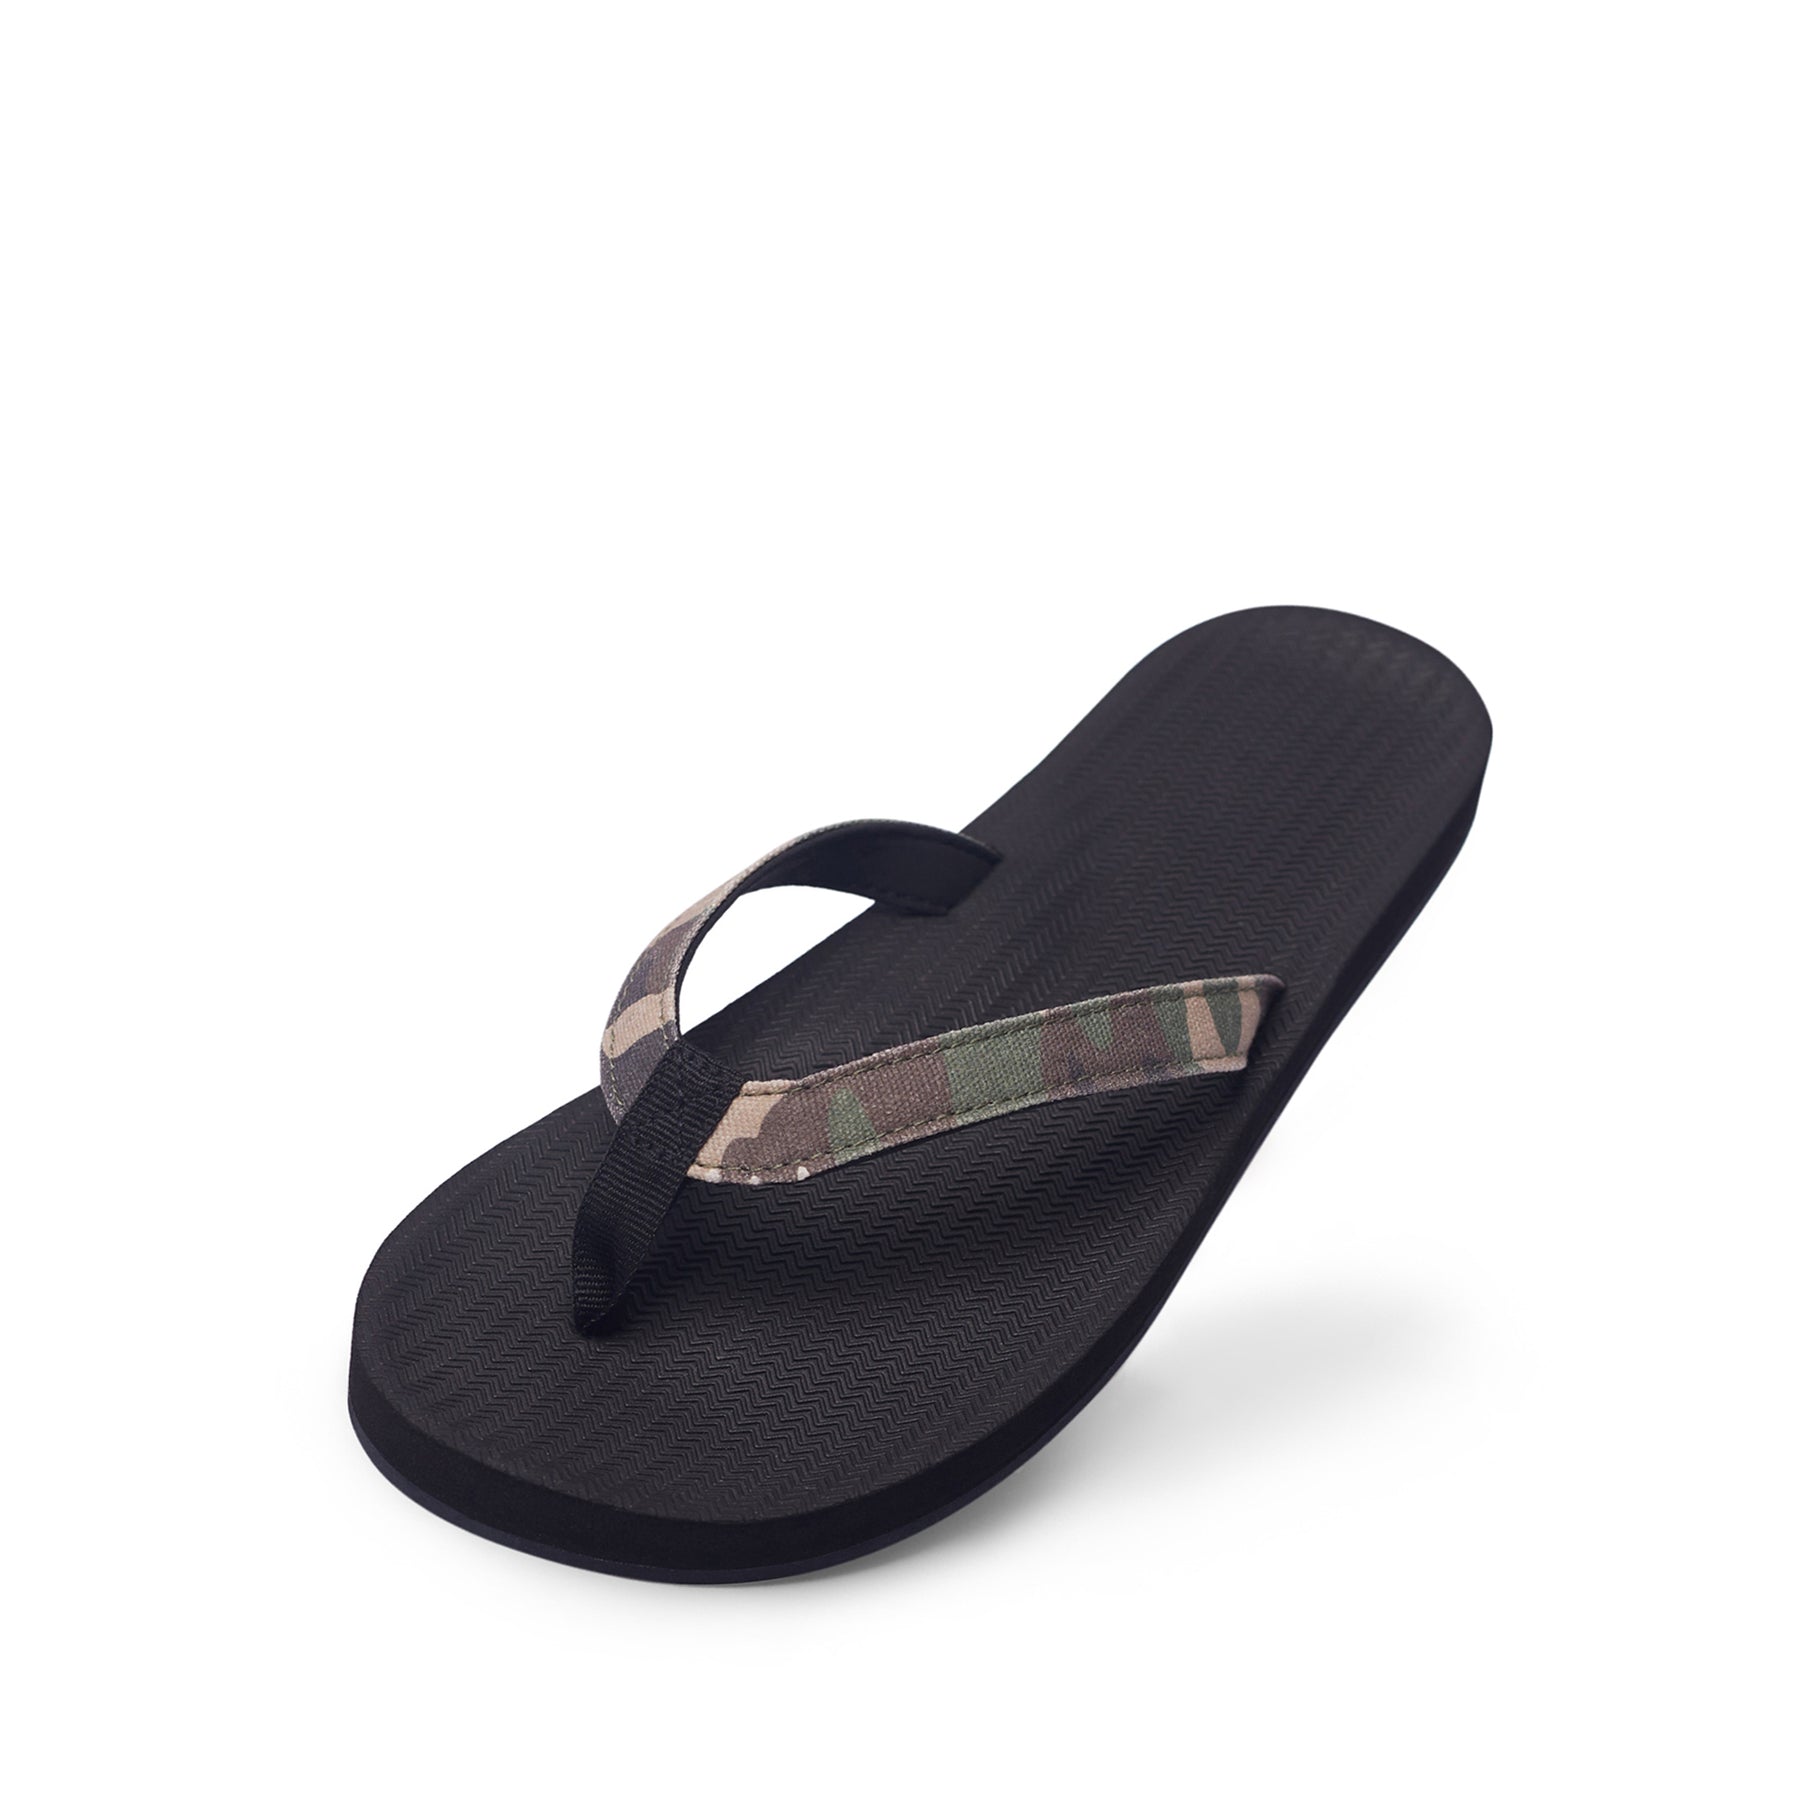 Women's Flip Flops Camo - Black/Camo Regular